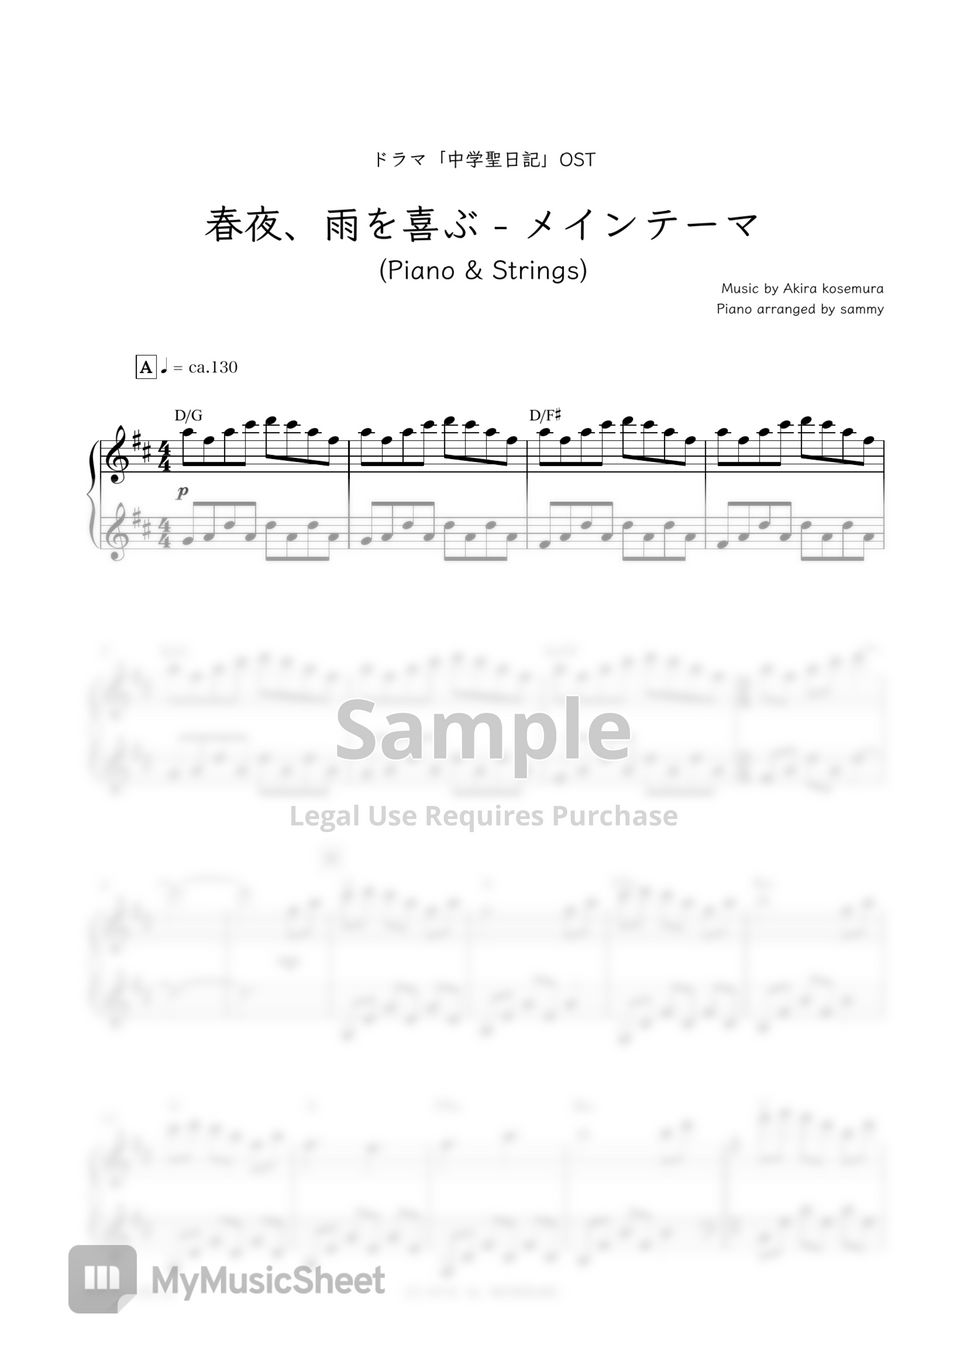 日剧《中学圣日记 (中学聖日記) 》插曲 - Shunya, Ame Wo Yorokobu - Main Thema [Piano & Strings] (春夜、雨を喜ぶ - メインテーマ [Piano & Strings]) by sammy